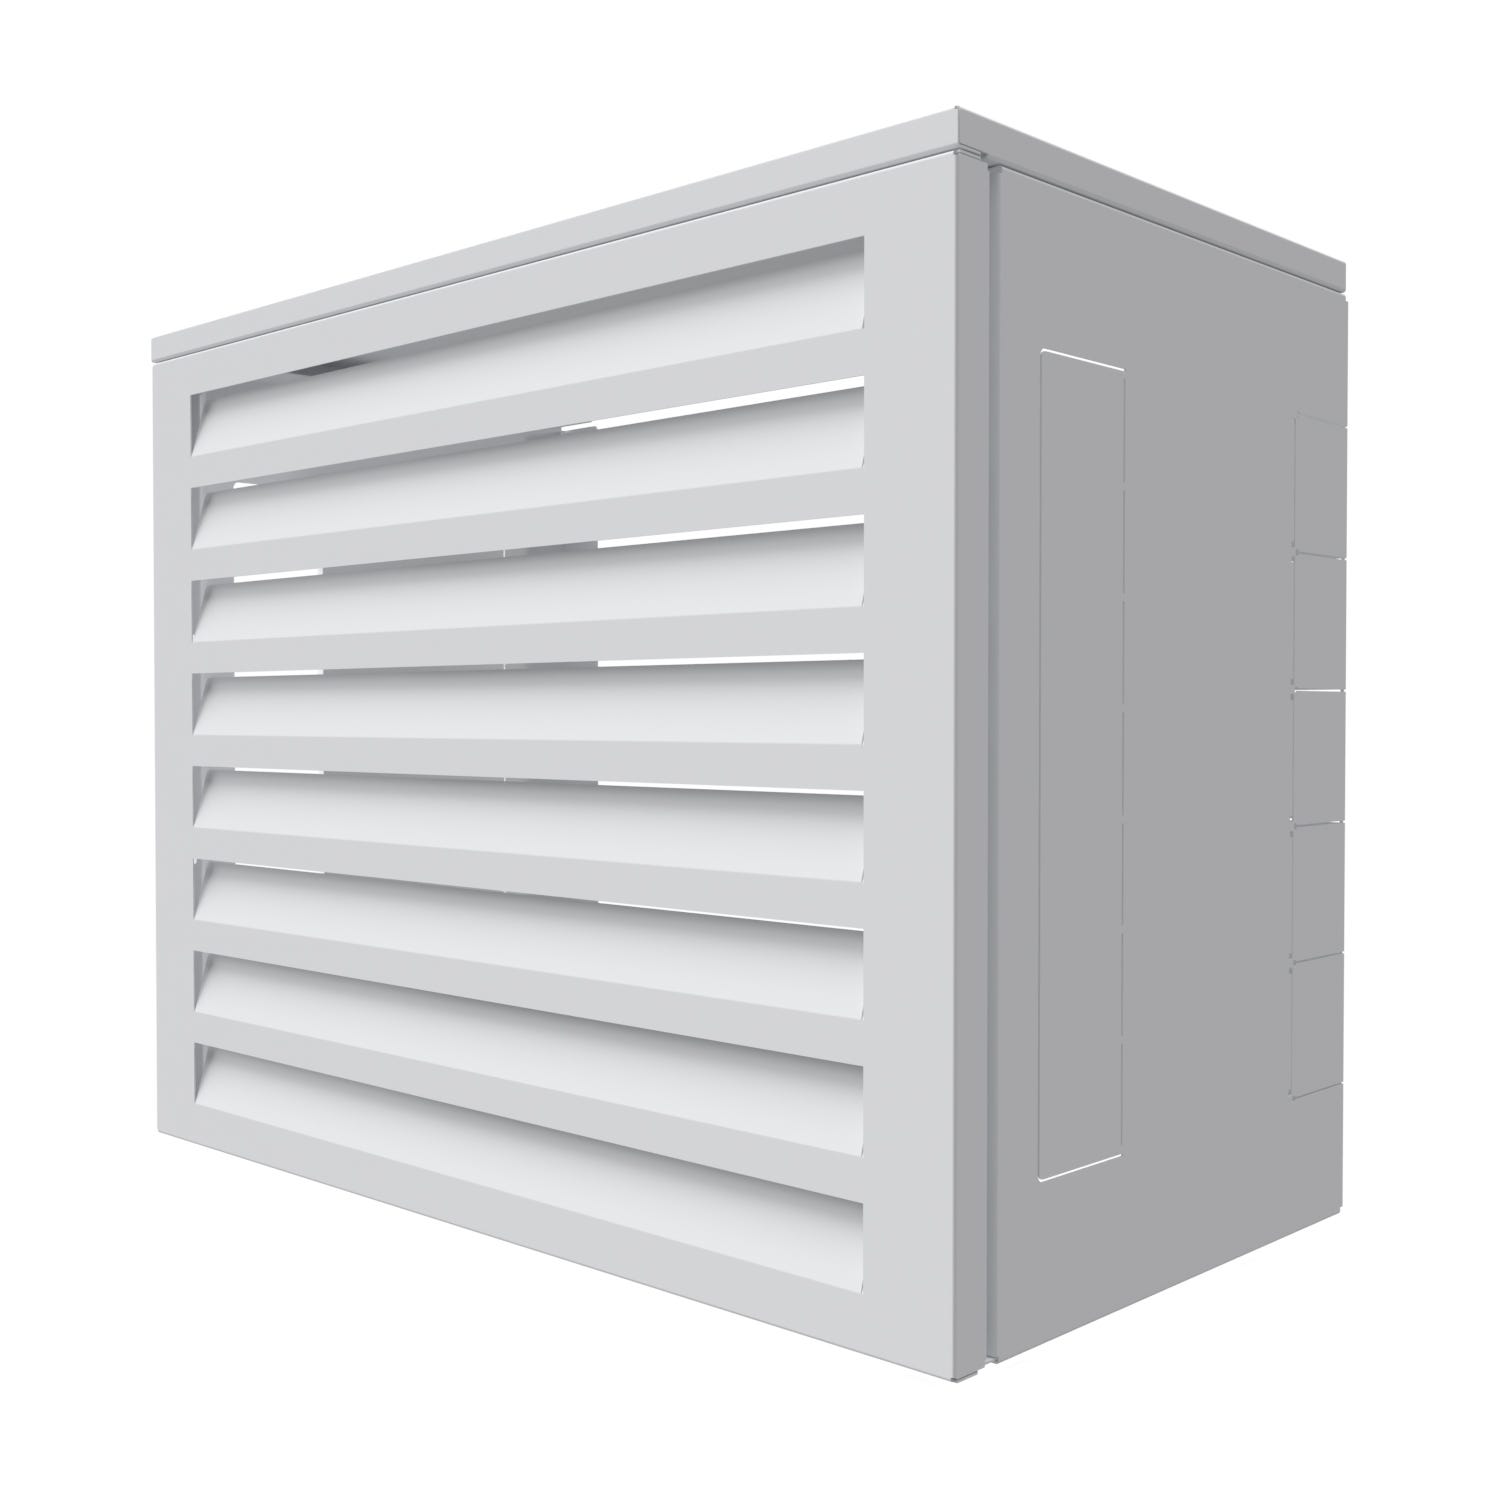 Cache climatiseur acoustique ATOLE en Aluminium Thermolaqué - Taille 2 : H. 113 x L. 110 x P. 64 cm - Blanc 7